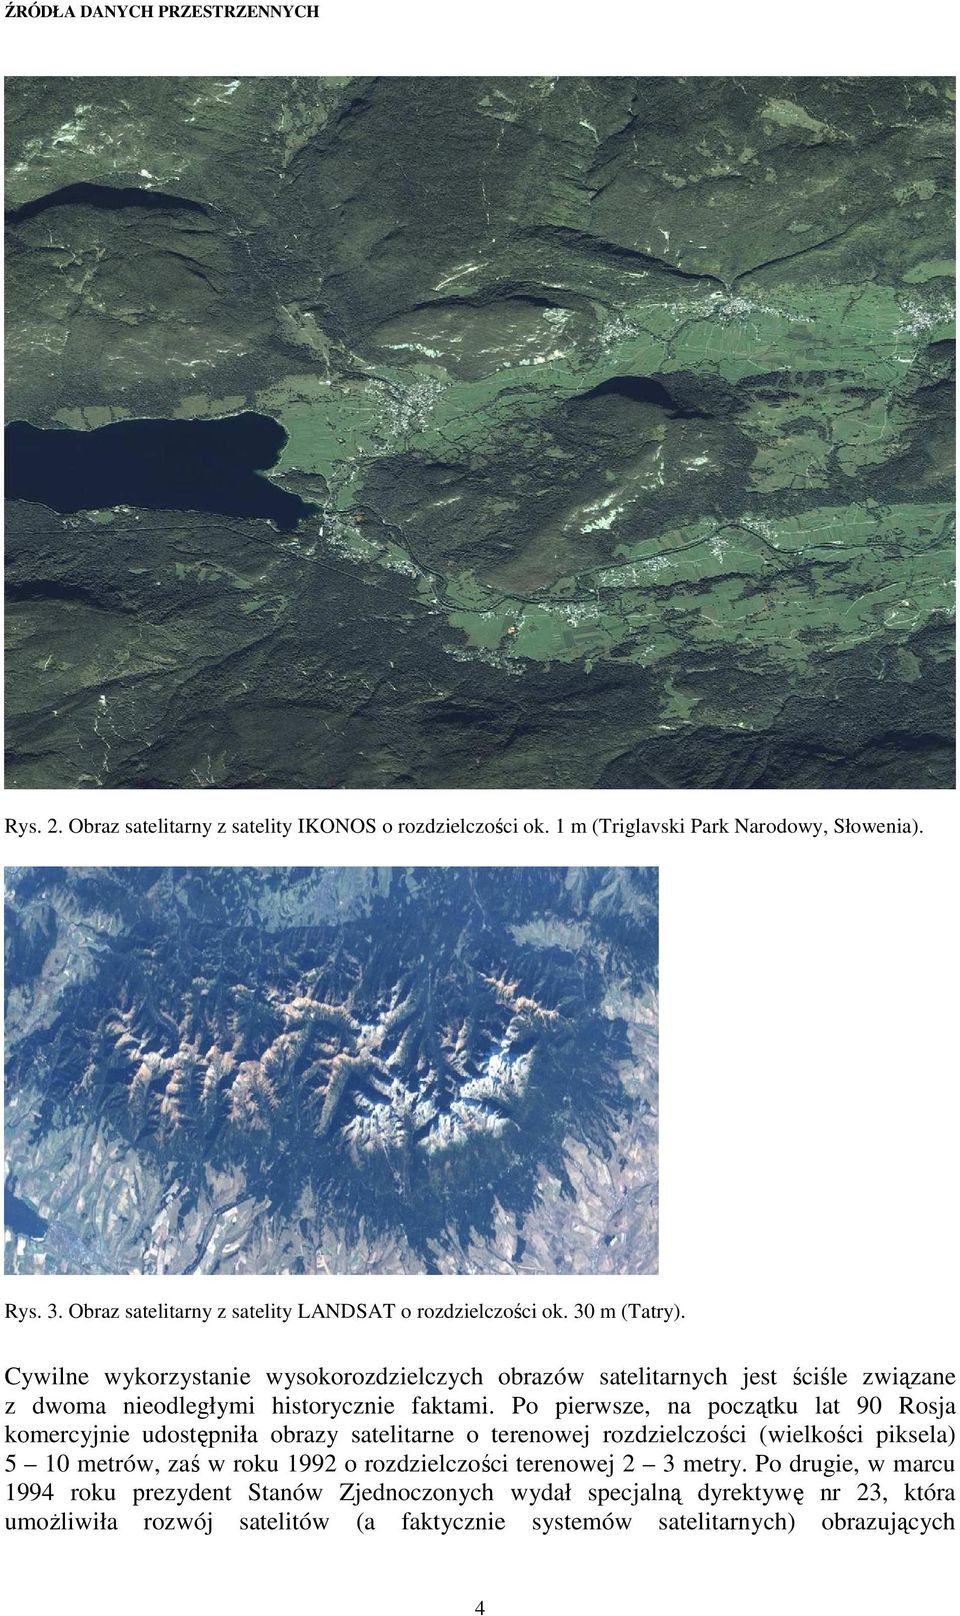 Cywilne wykorzystanie wysokorozdzielczych obrazów satelitarnych jest ściśle związane z dwoma nieodległymi historycznie faktami.